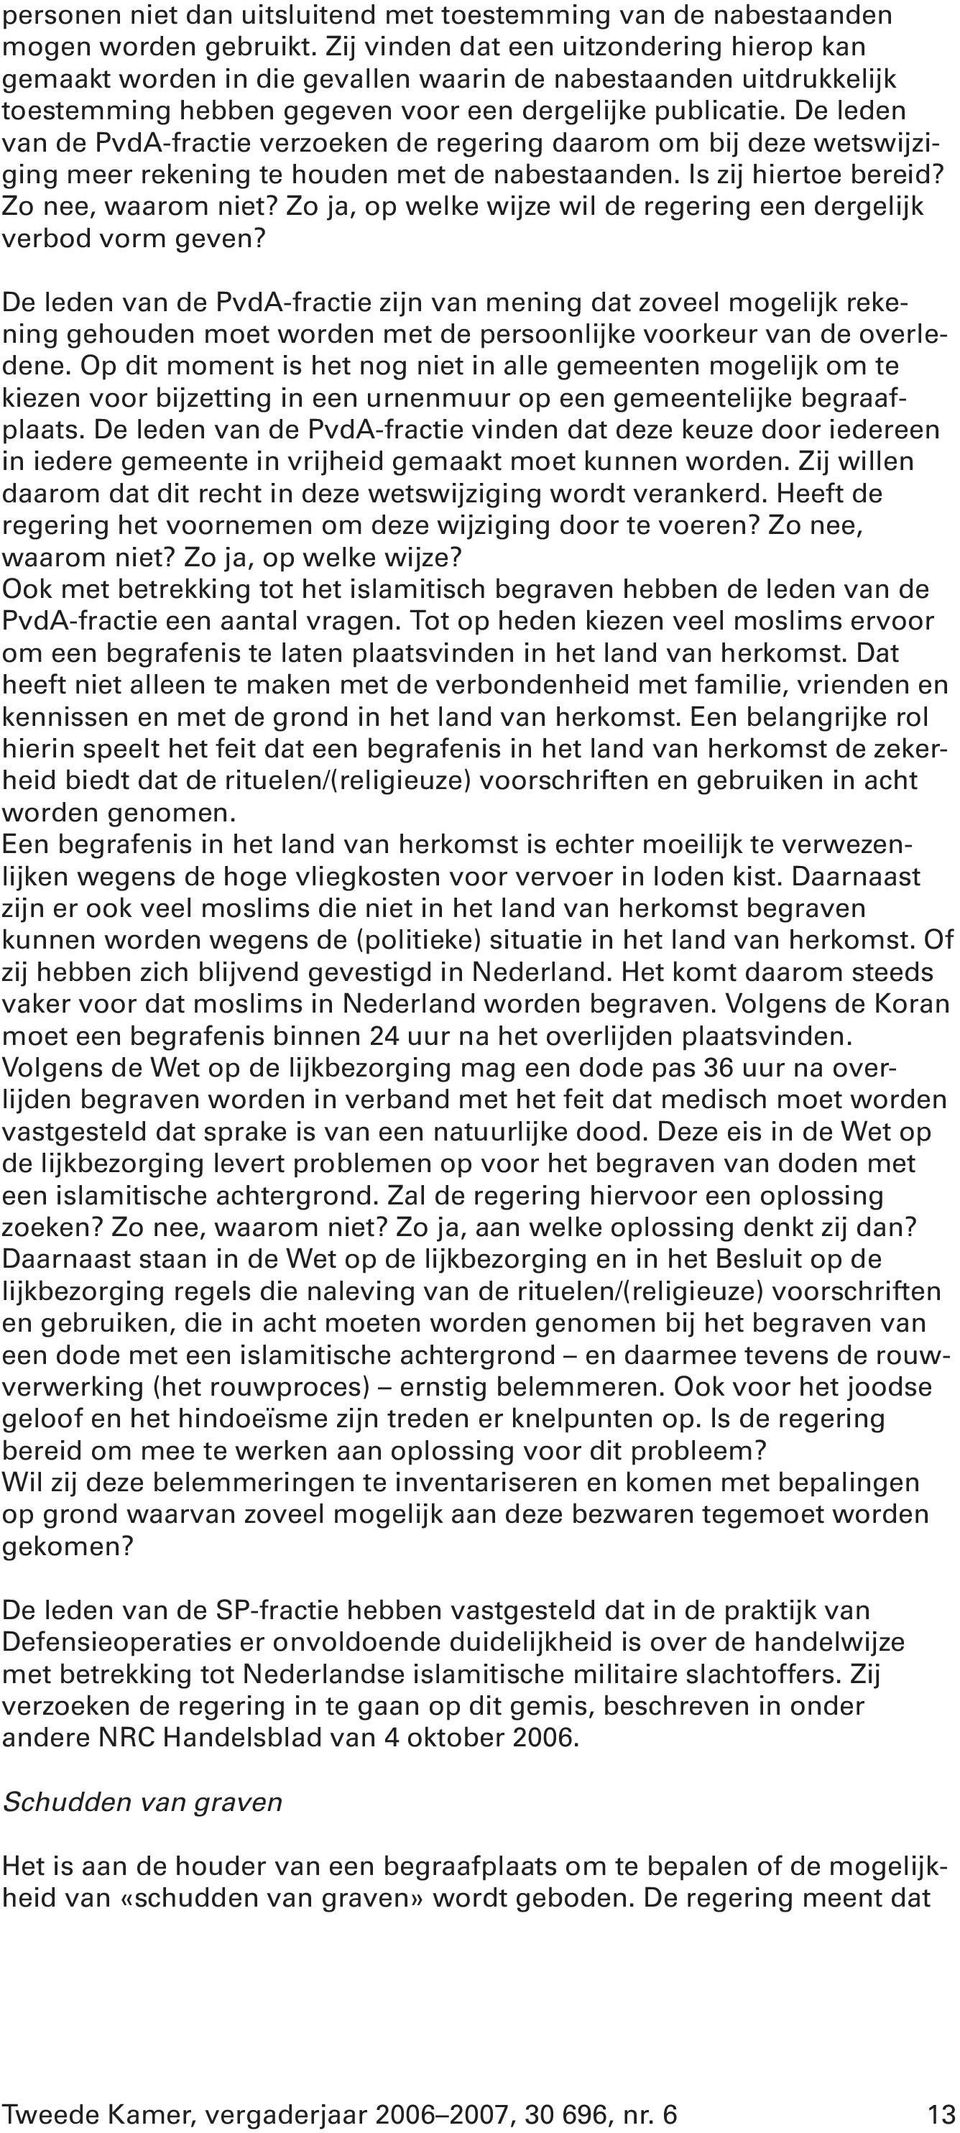 De leden van de PvdA-fractie verzoeken de regering daarom om bij deze wetswijziging meer rekening te houden met de nabestaanden. Is zij hiertoe bereid? Zo nee, waarom niet?